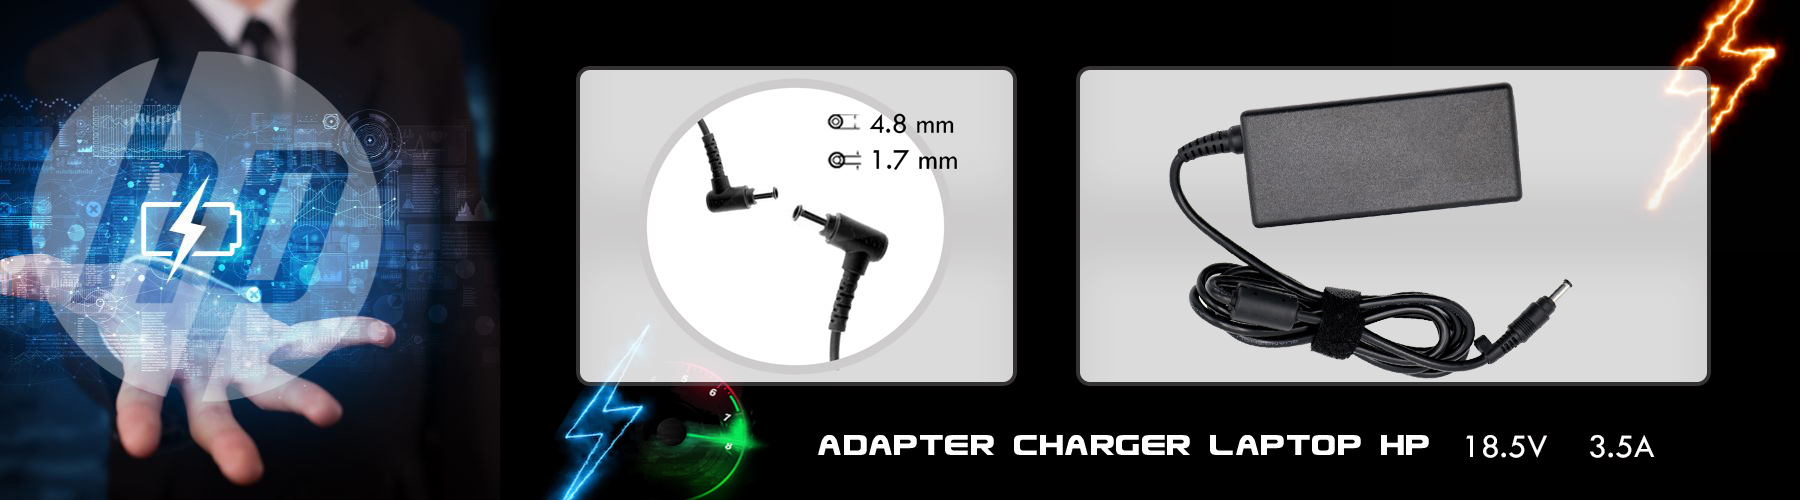 شارژر لپ تاپ اچ پی 18.5 ولت 3.5امپر